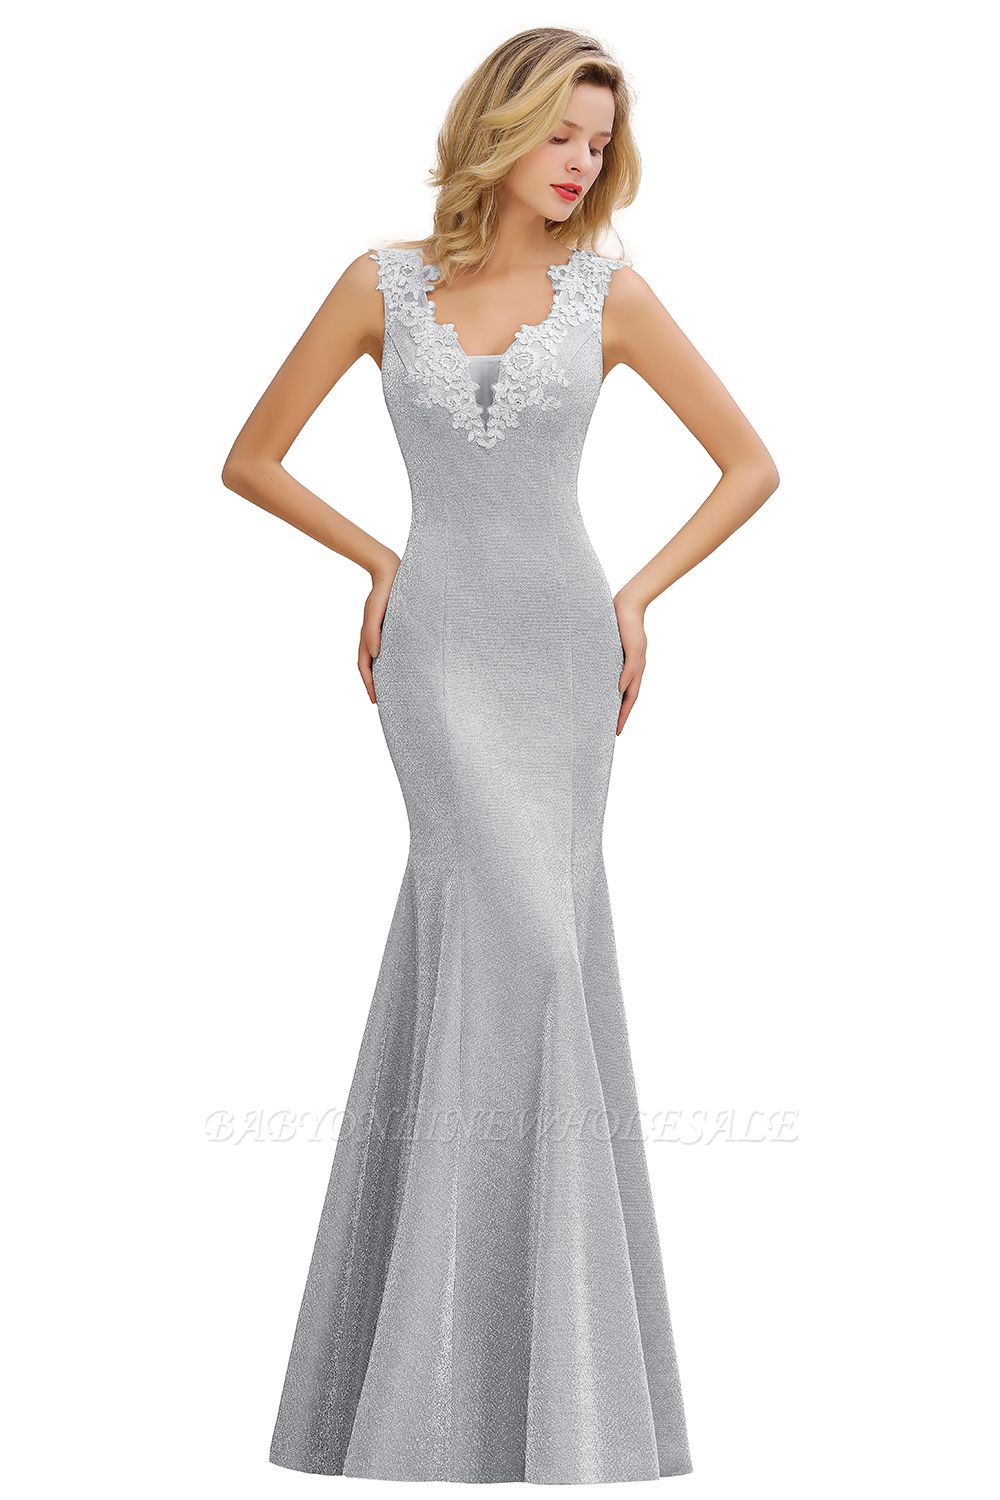 Длинные вечерние платья с V-образным вырезом Sparkly Deep | Элегантное вечернее платье без рукавов с цветочным принтом